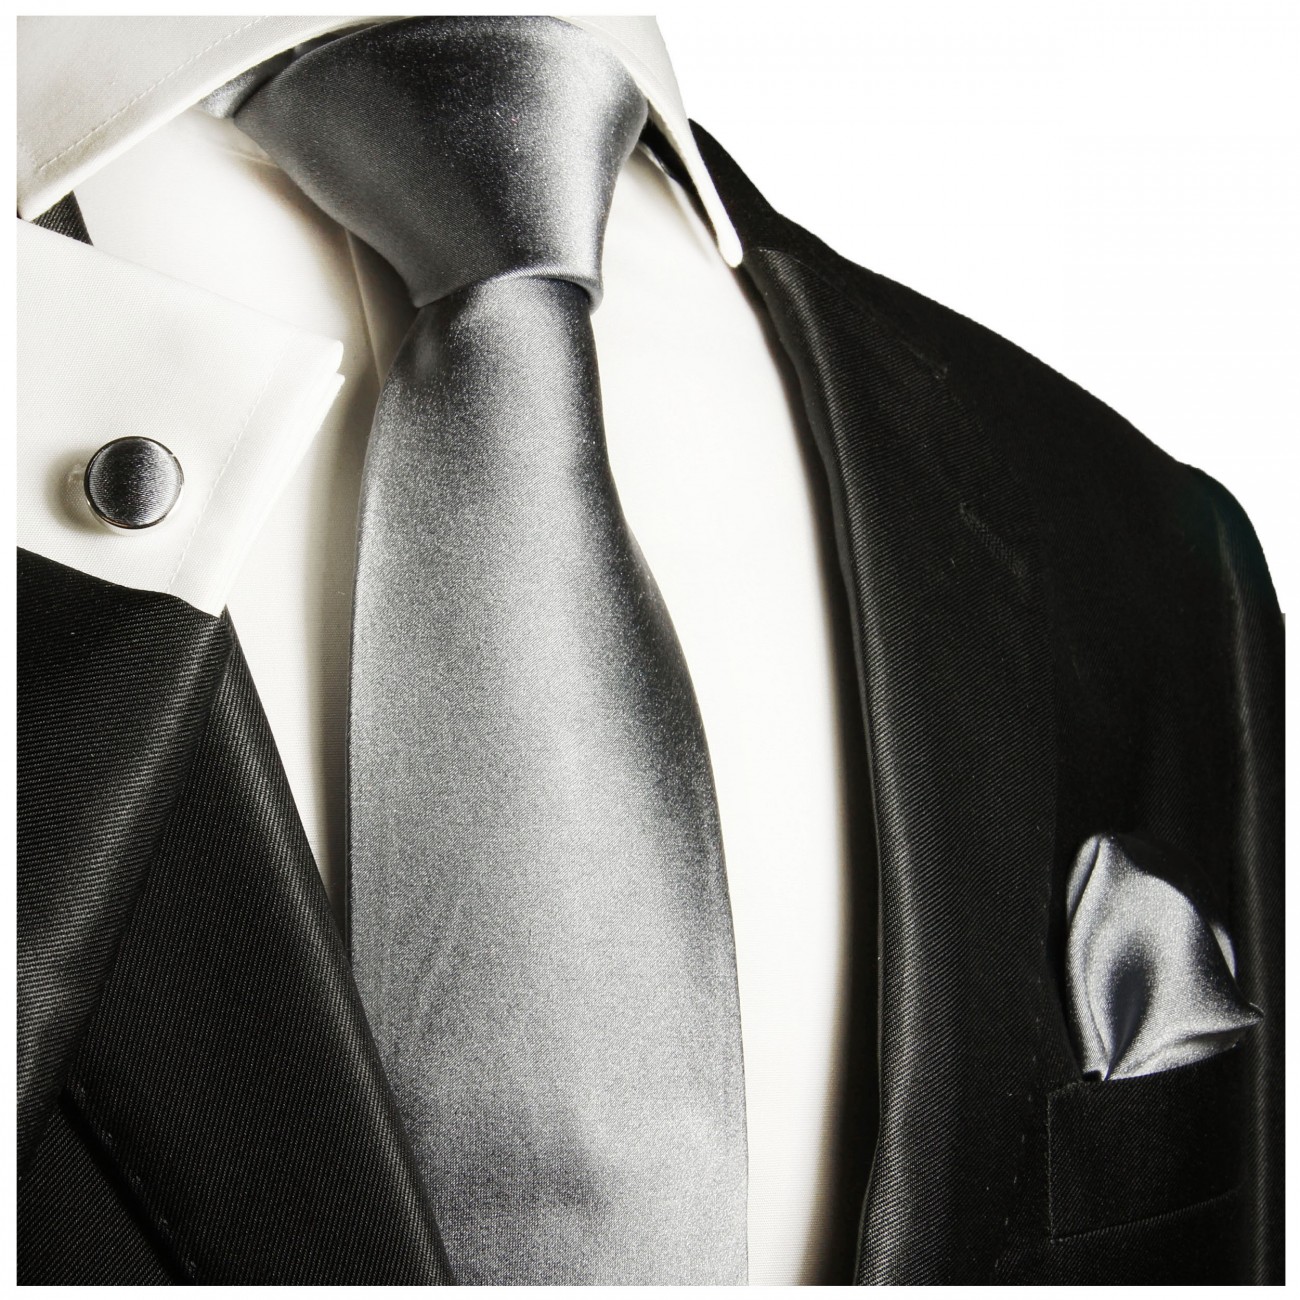 Krawatte silber grau uni satin Seide mit Einstecktuch und Manschettenknöpfe